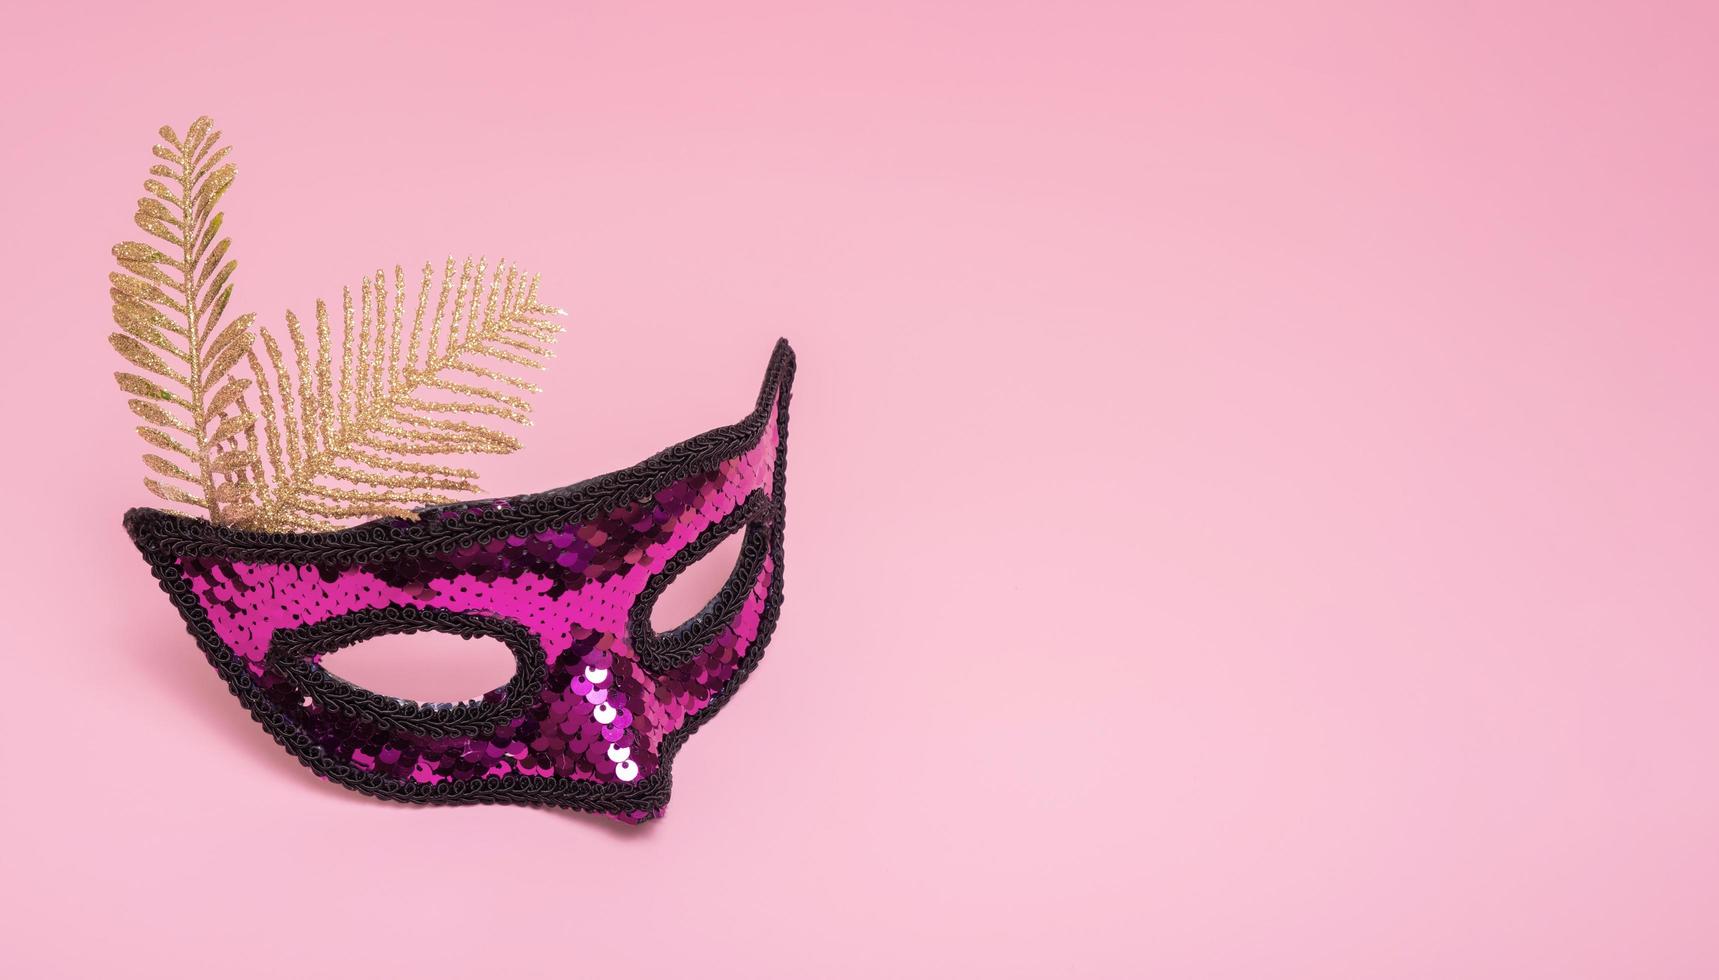 festliche gesichtsmaskenmaske für karnevalsfeier auf farbigem hintergrund mit kopienraum foto